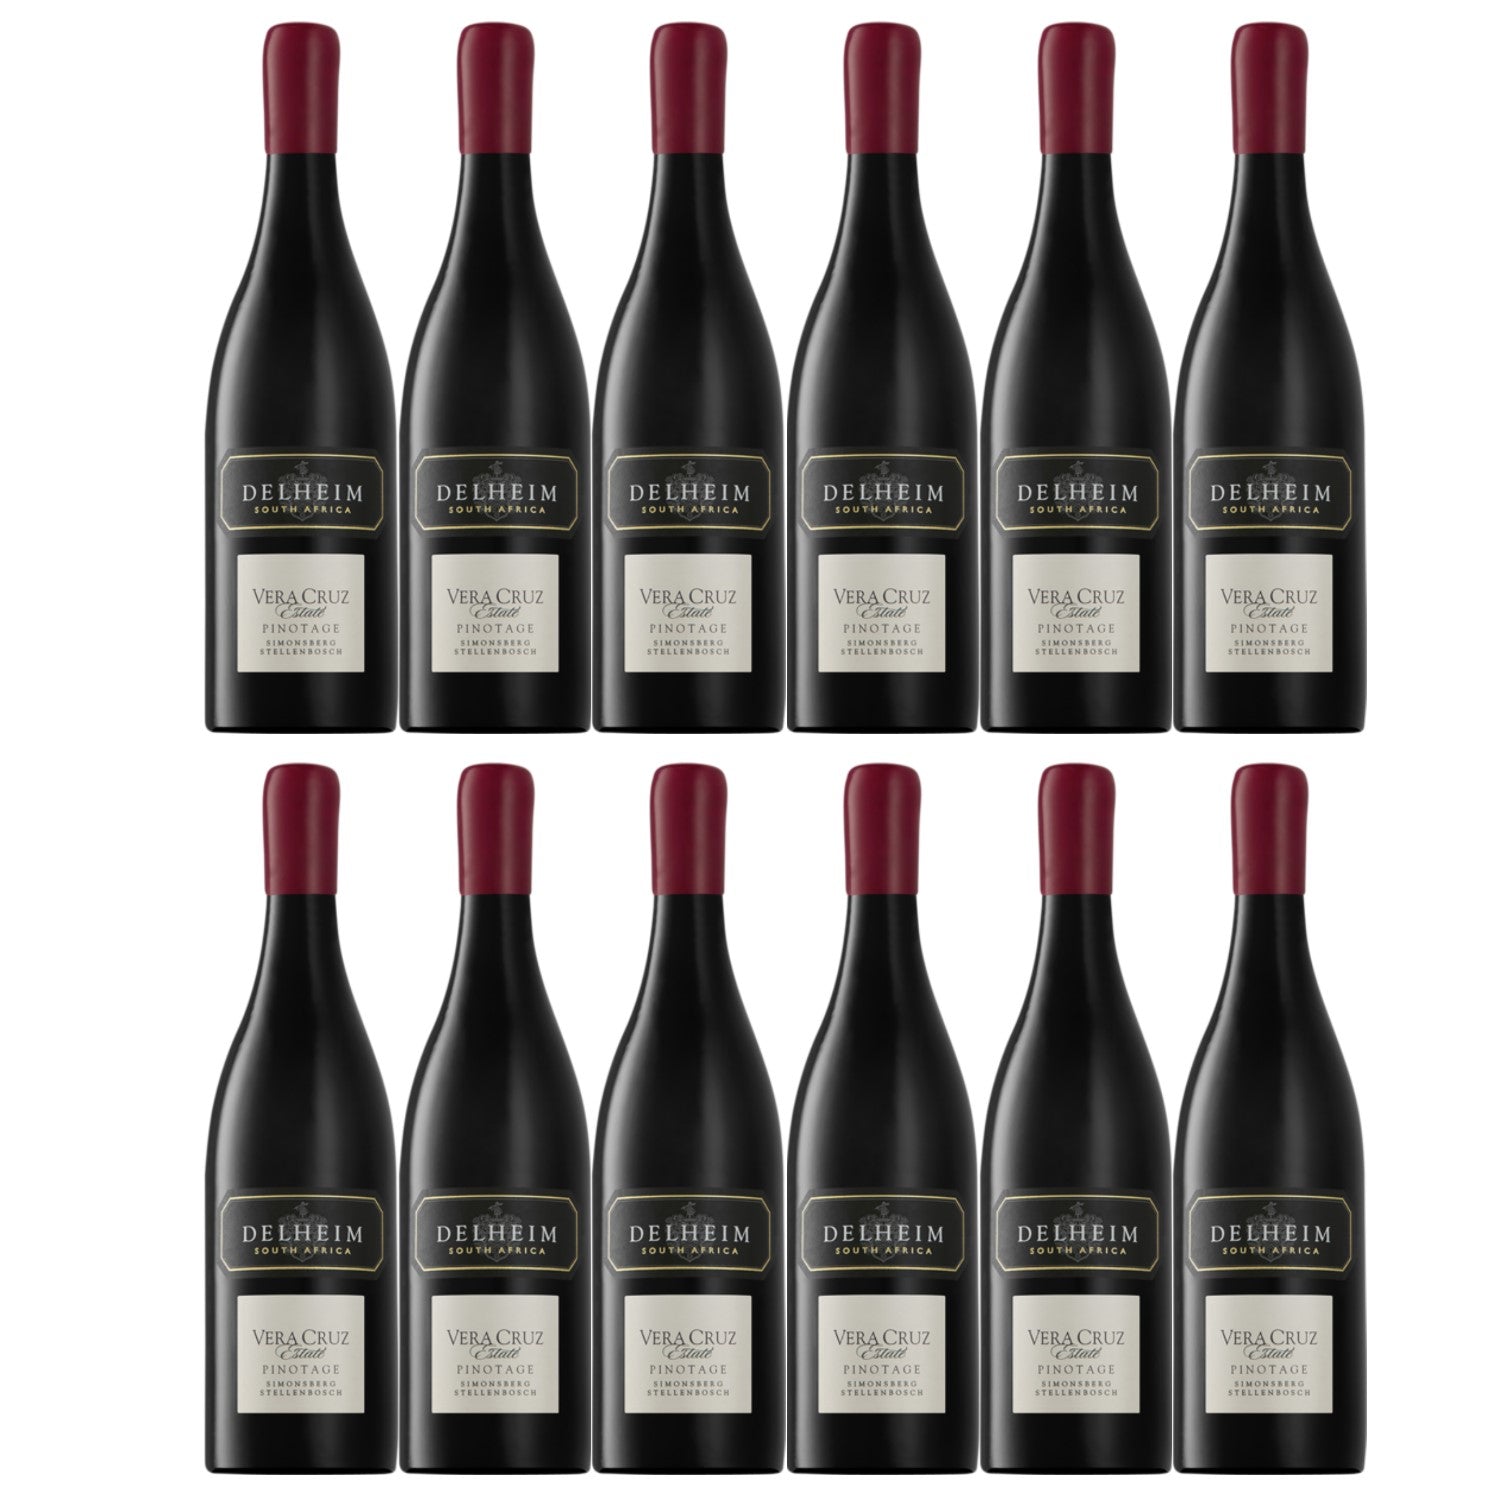 Delheim Vera Cruz Pinotage Simonsberg-Stellenbosch Rotwein Wein trocken Südafrika (12 x 0.75l) - Versanel -